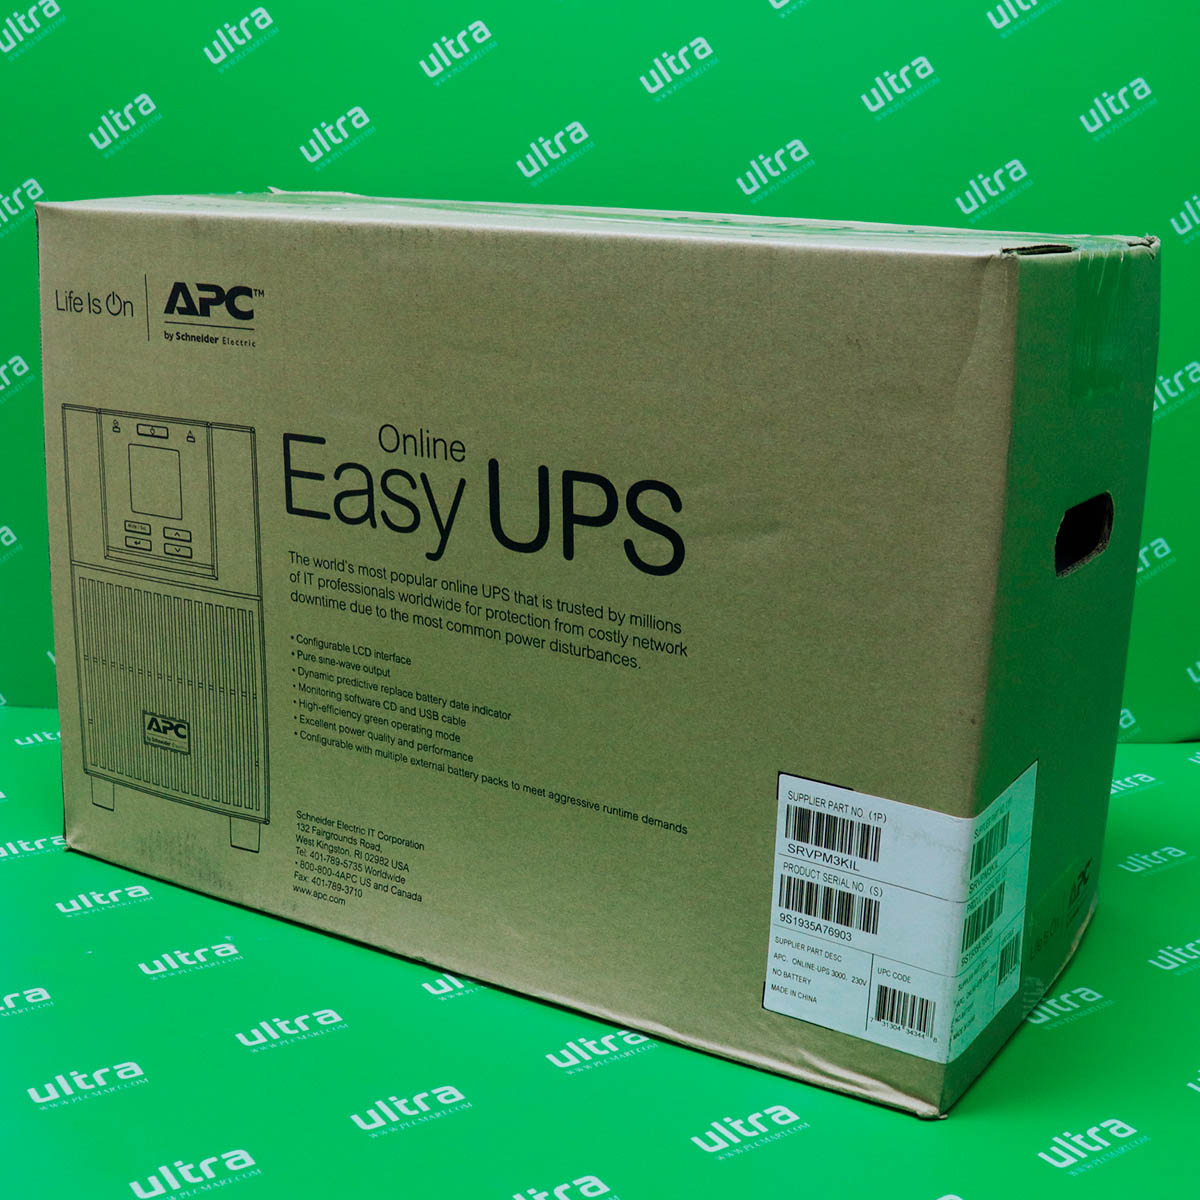 [신품] SRVPM3KIL APC Easy UPS On-Line Ext. Runtime SRV 3000VA 230V (통상납기 : 2주)